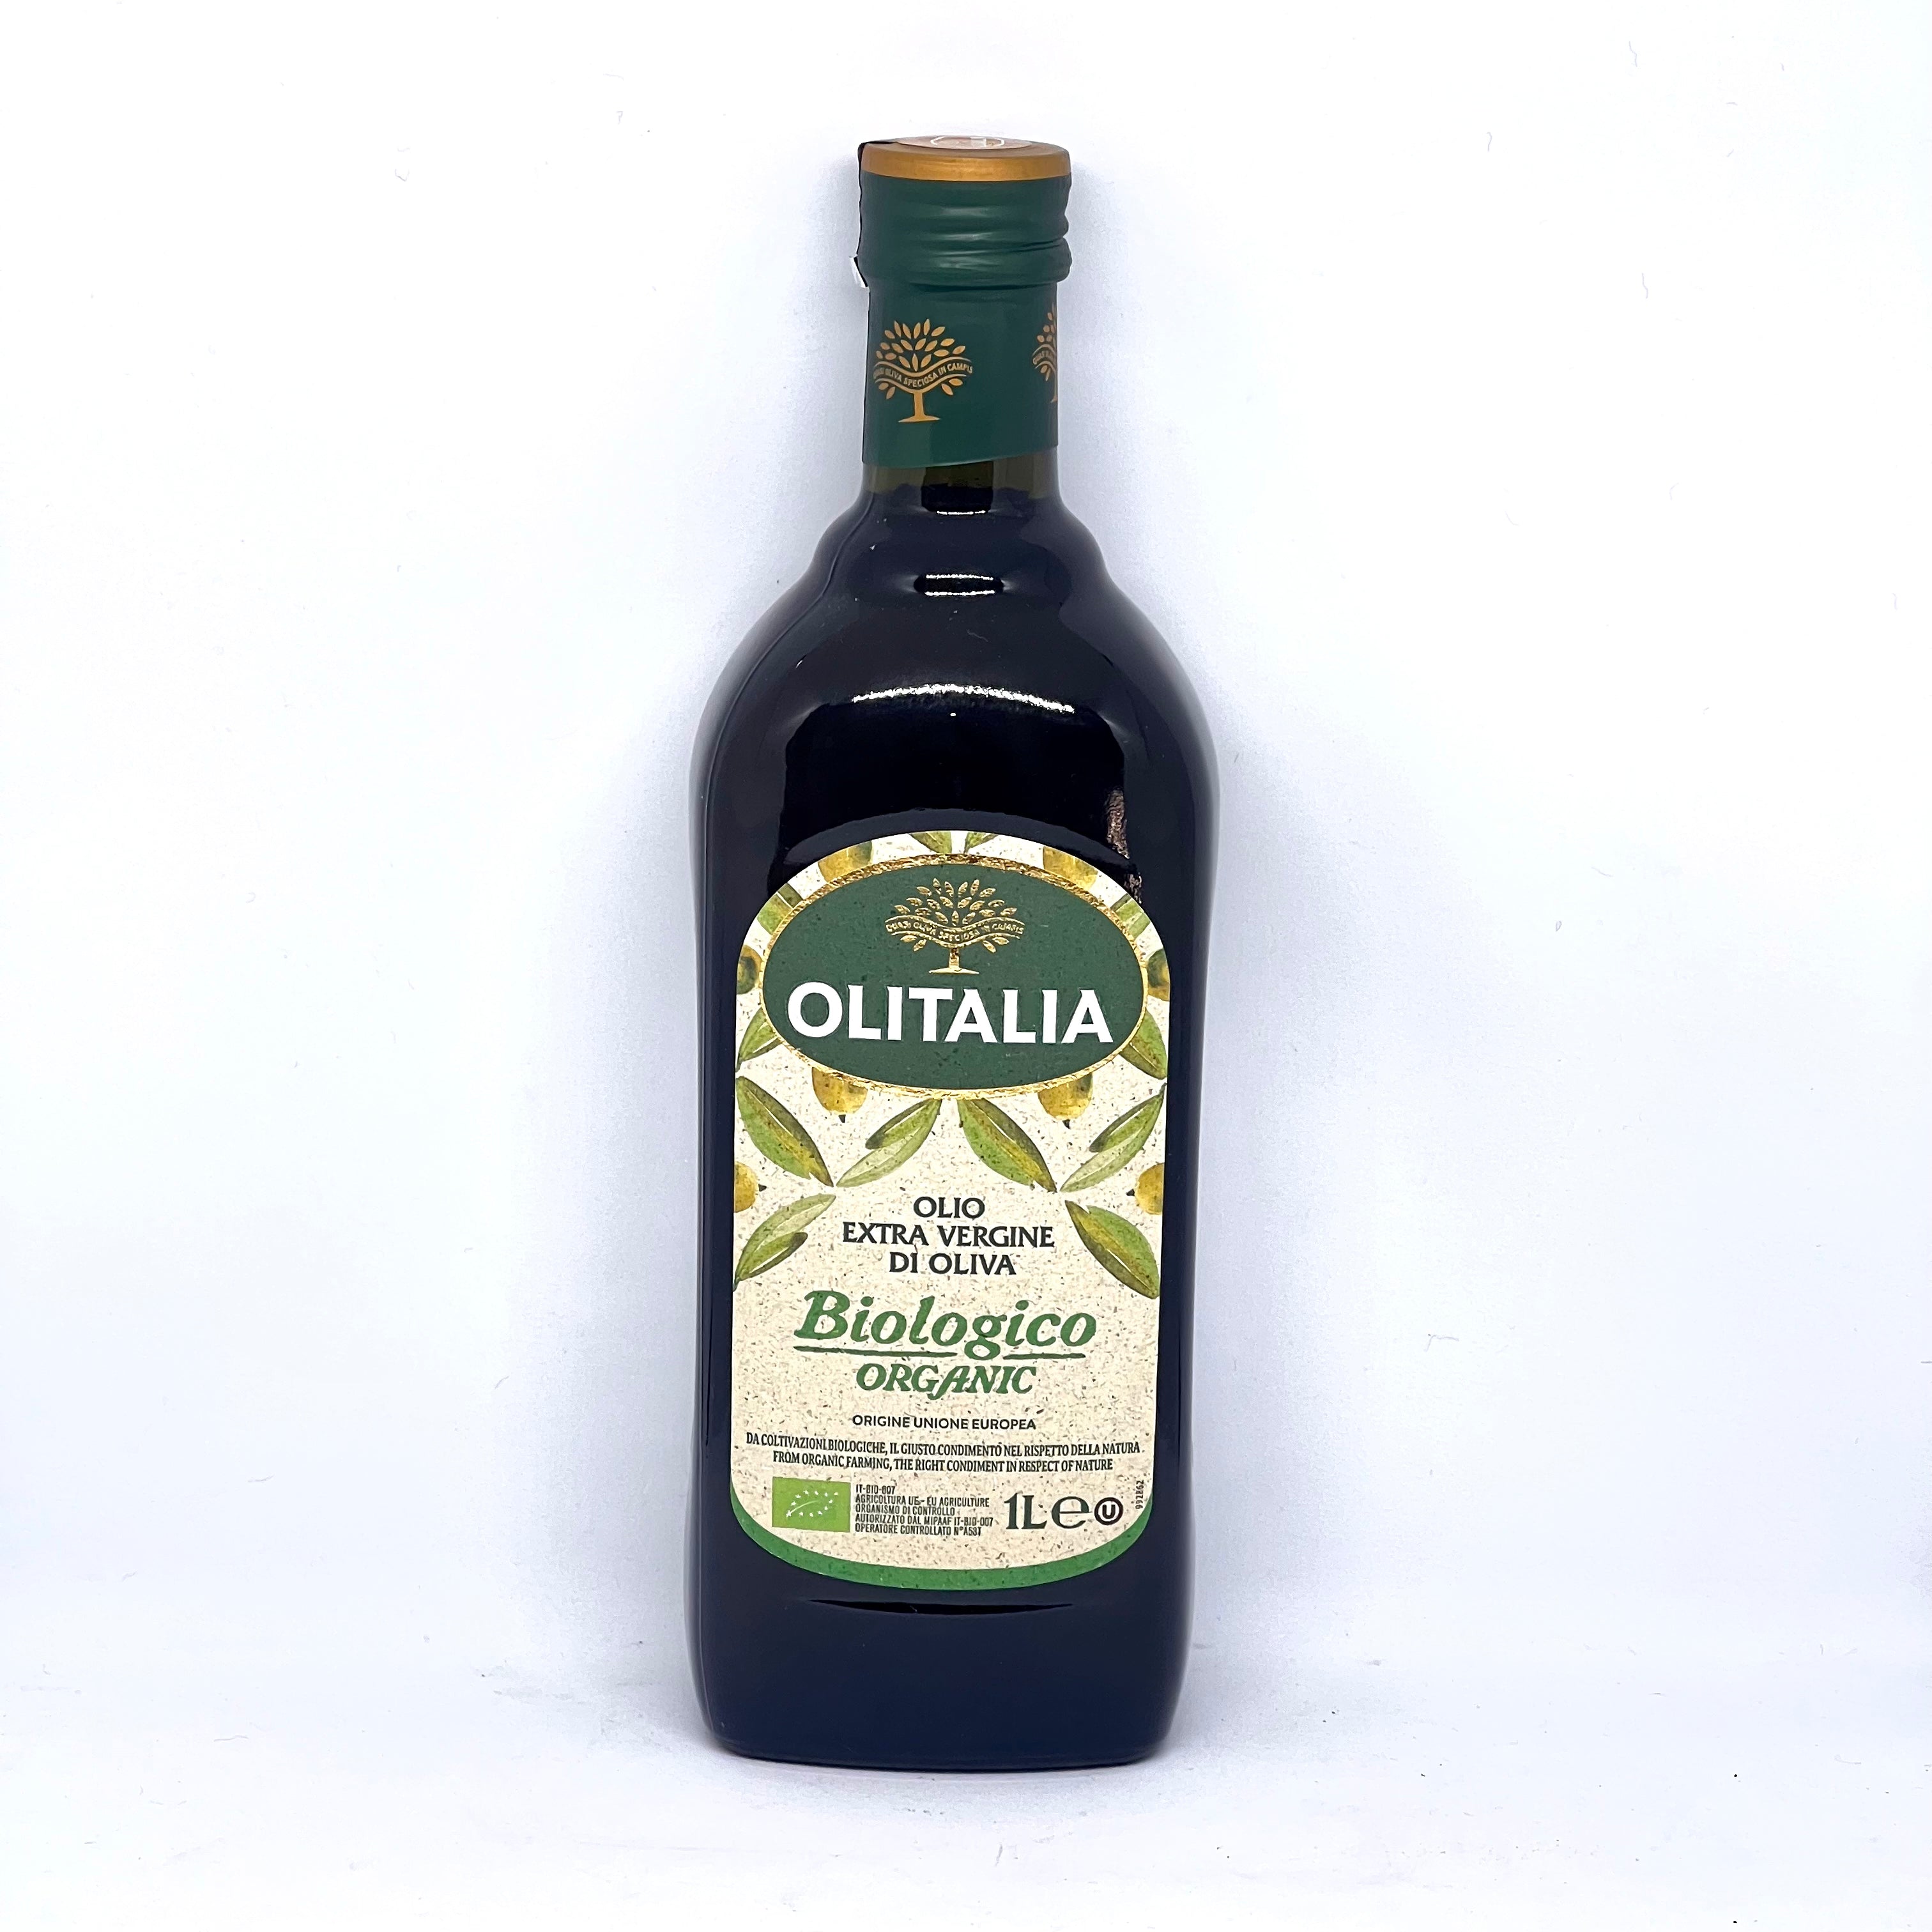 OLITALIA Organic Extra Virgin Olive Oil 1000mL